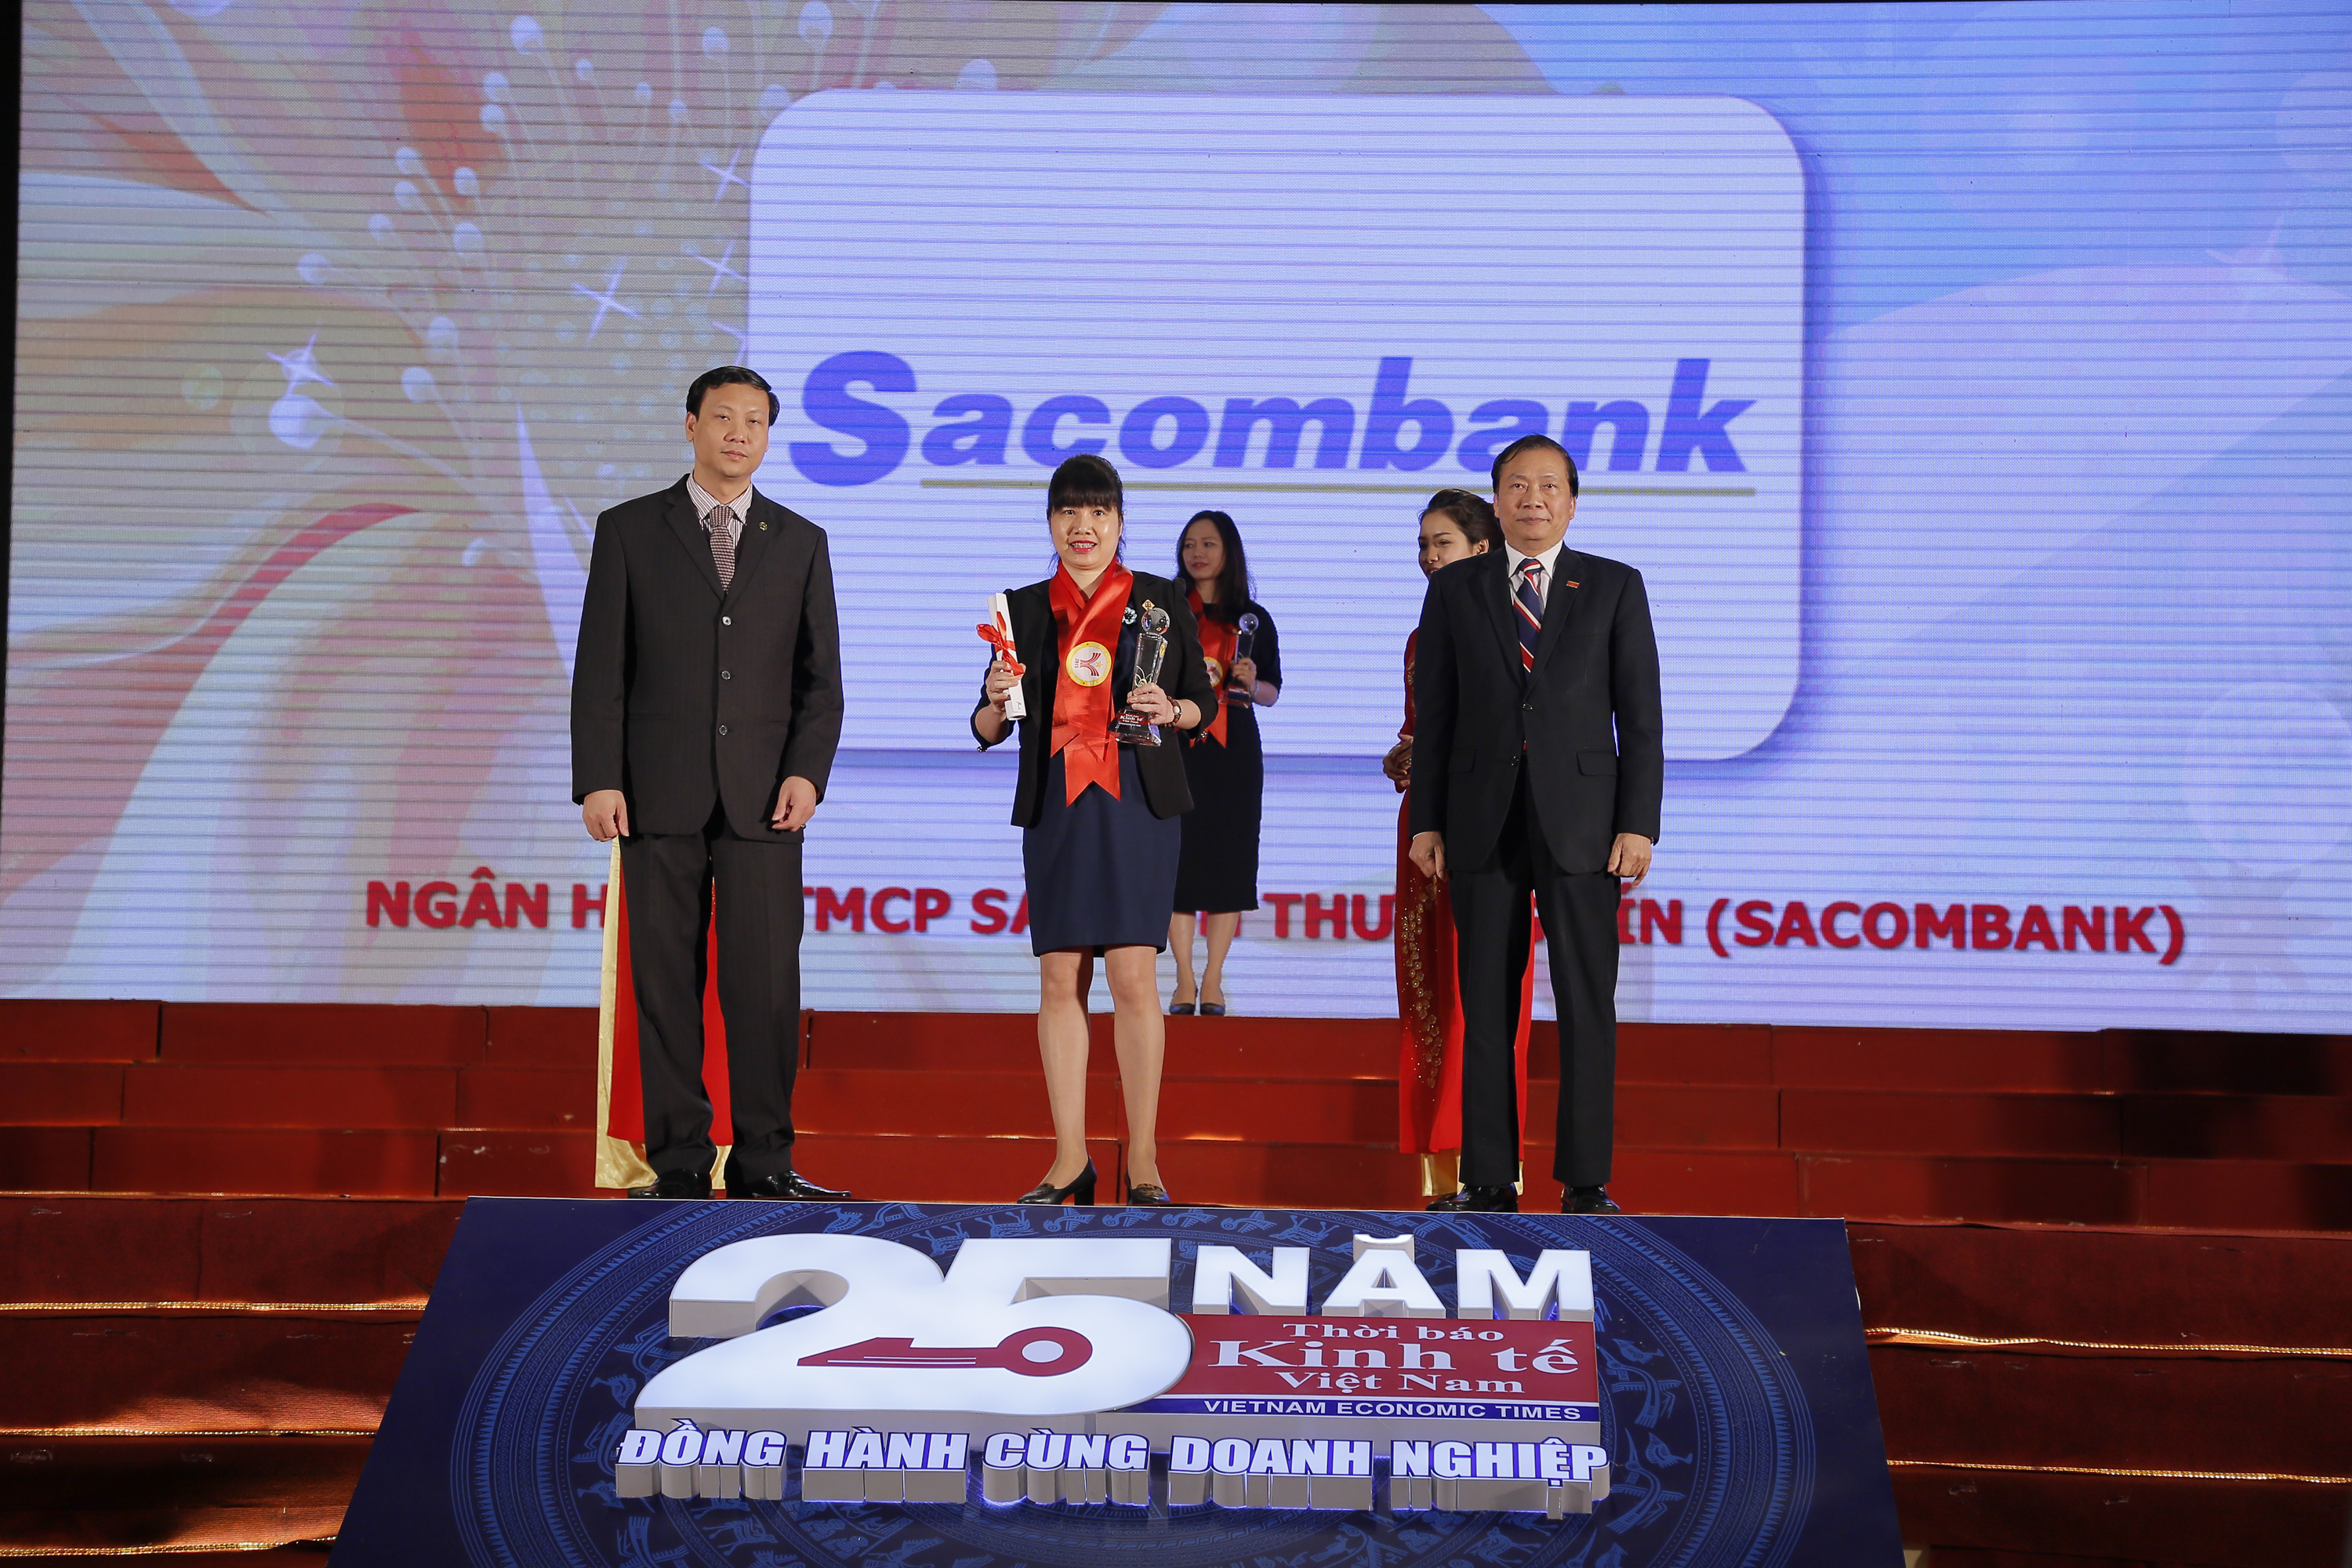 Sacombank_Thuong hieu manh 2016.jpg